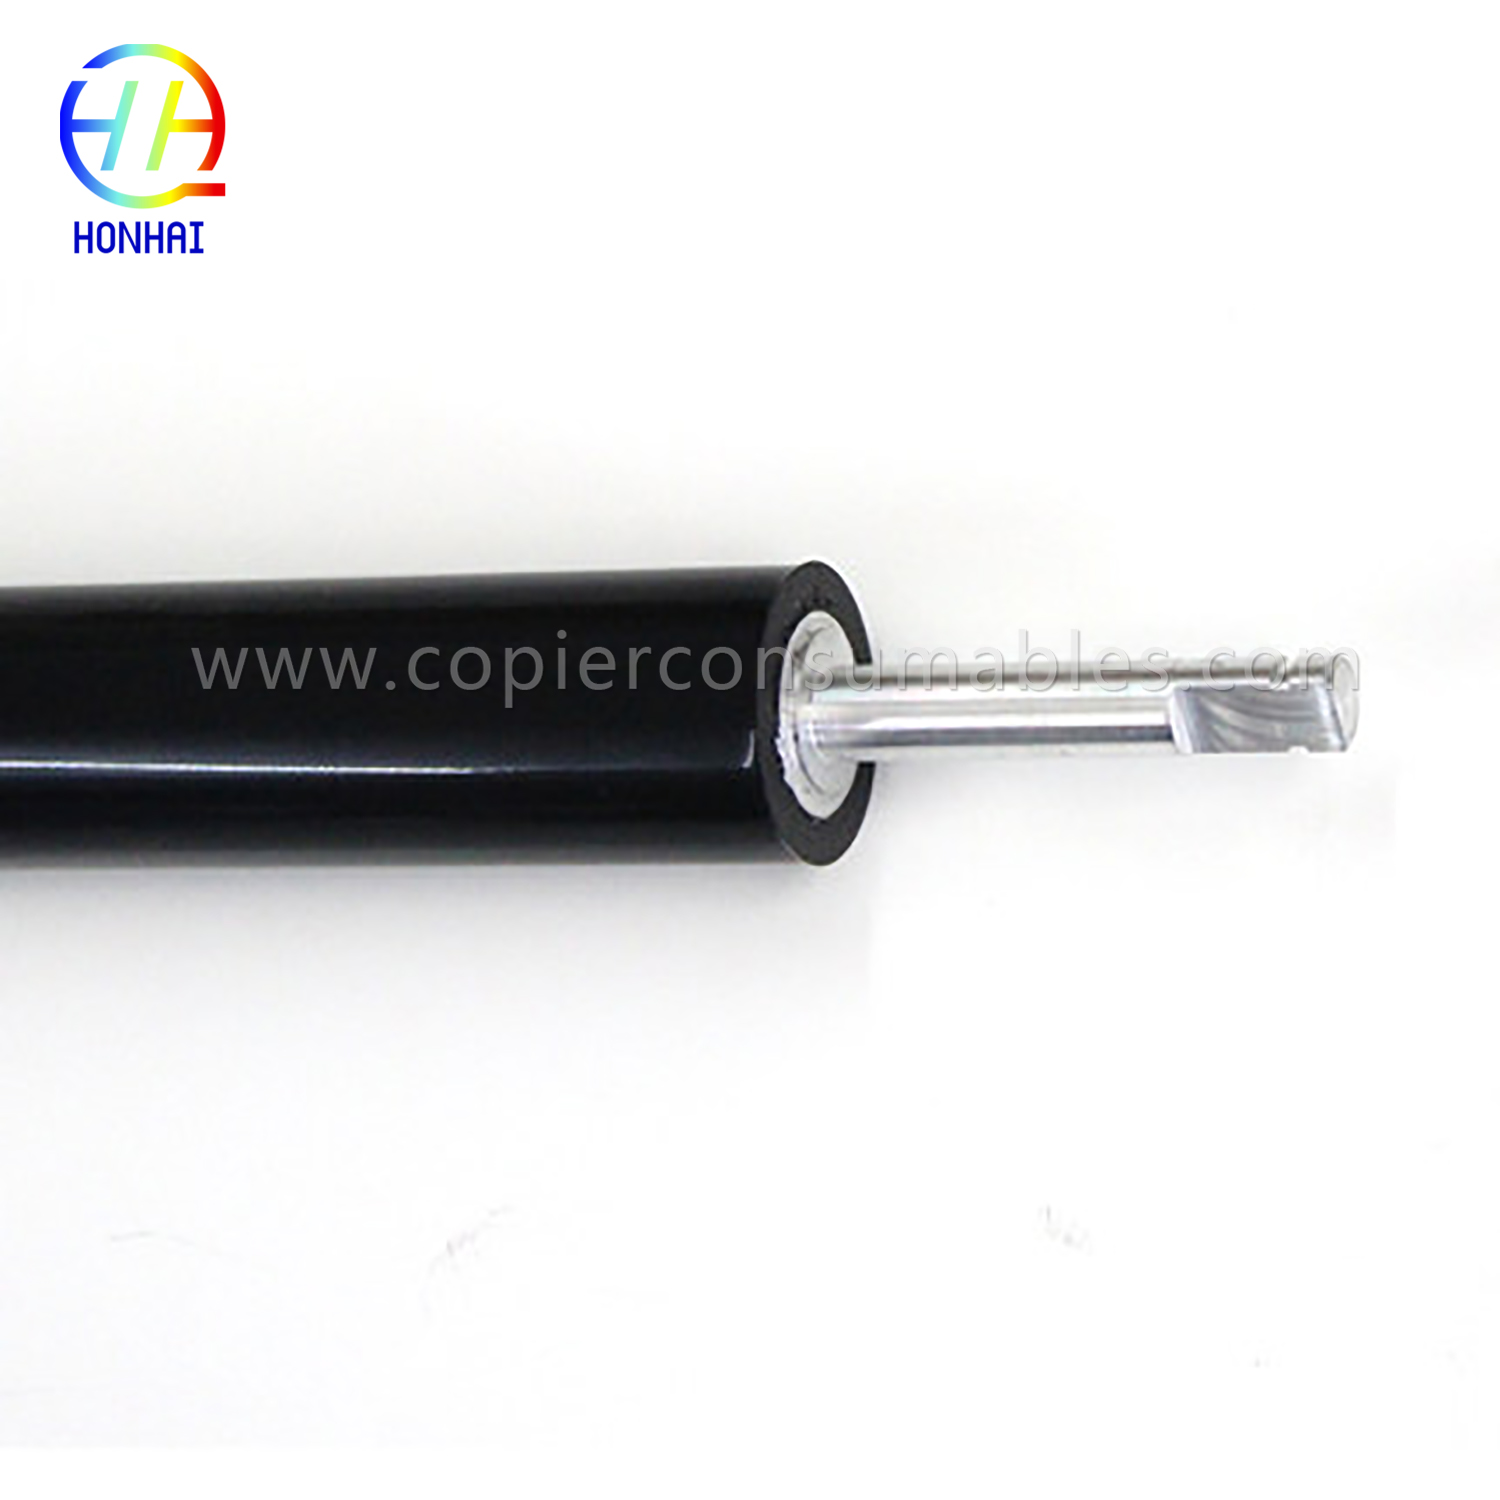 Roller Tekanan Handap pikeun HP Color LaserJet 4700 4730 CM4730 CP4005 (LPR-4700) (3) 拷贝